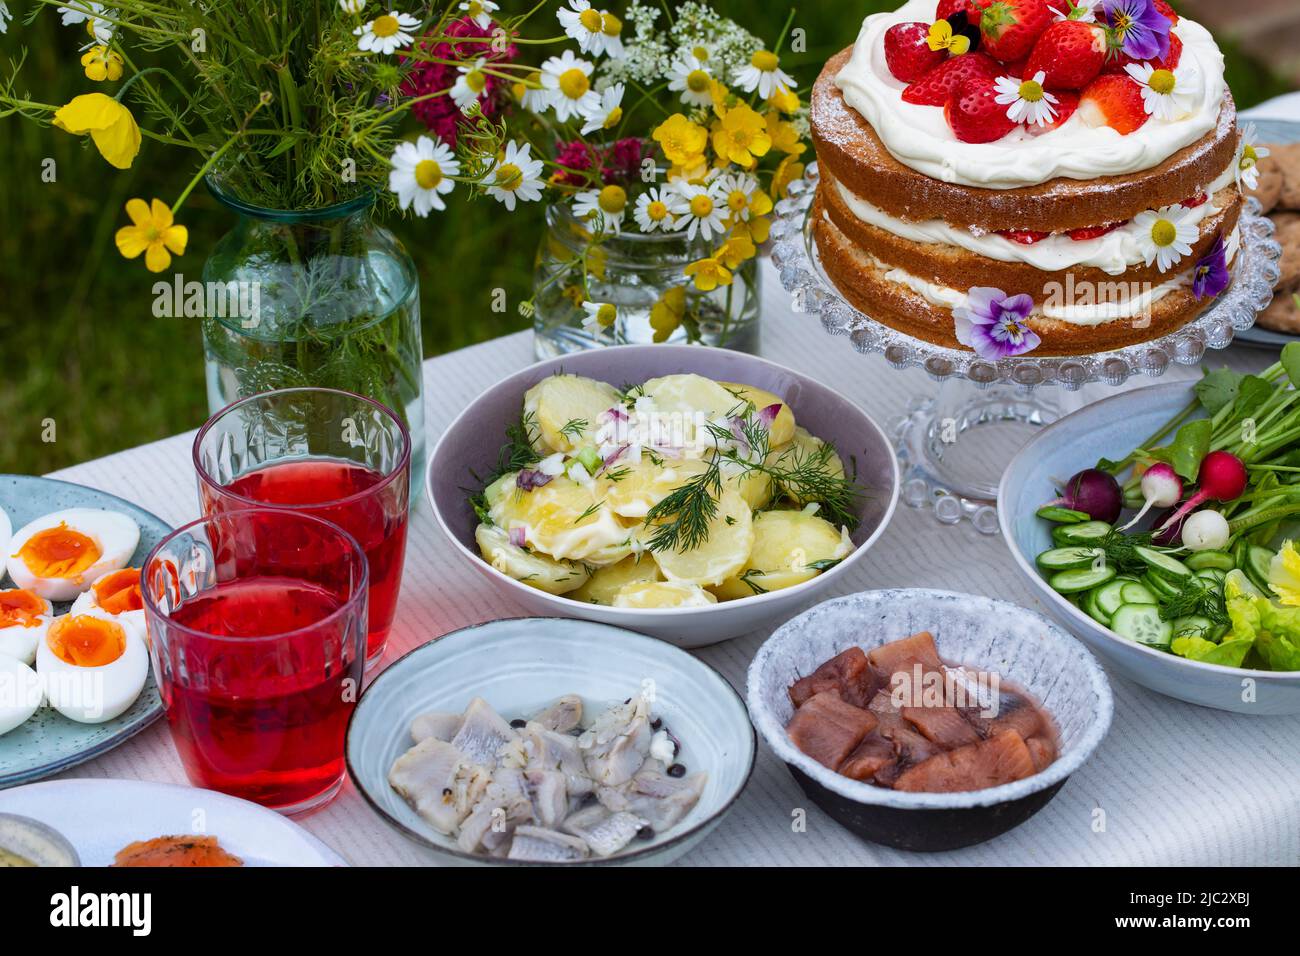 Repas scandinave mi-été avec gâteau à la fraise et à la crème, salade de pommes de terre, saumon et œufs Banque D'Images